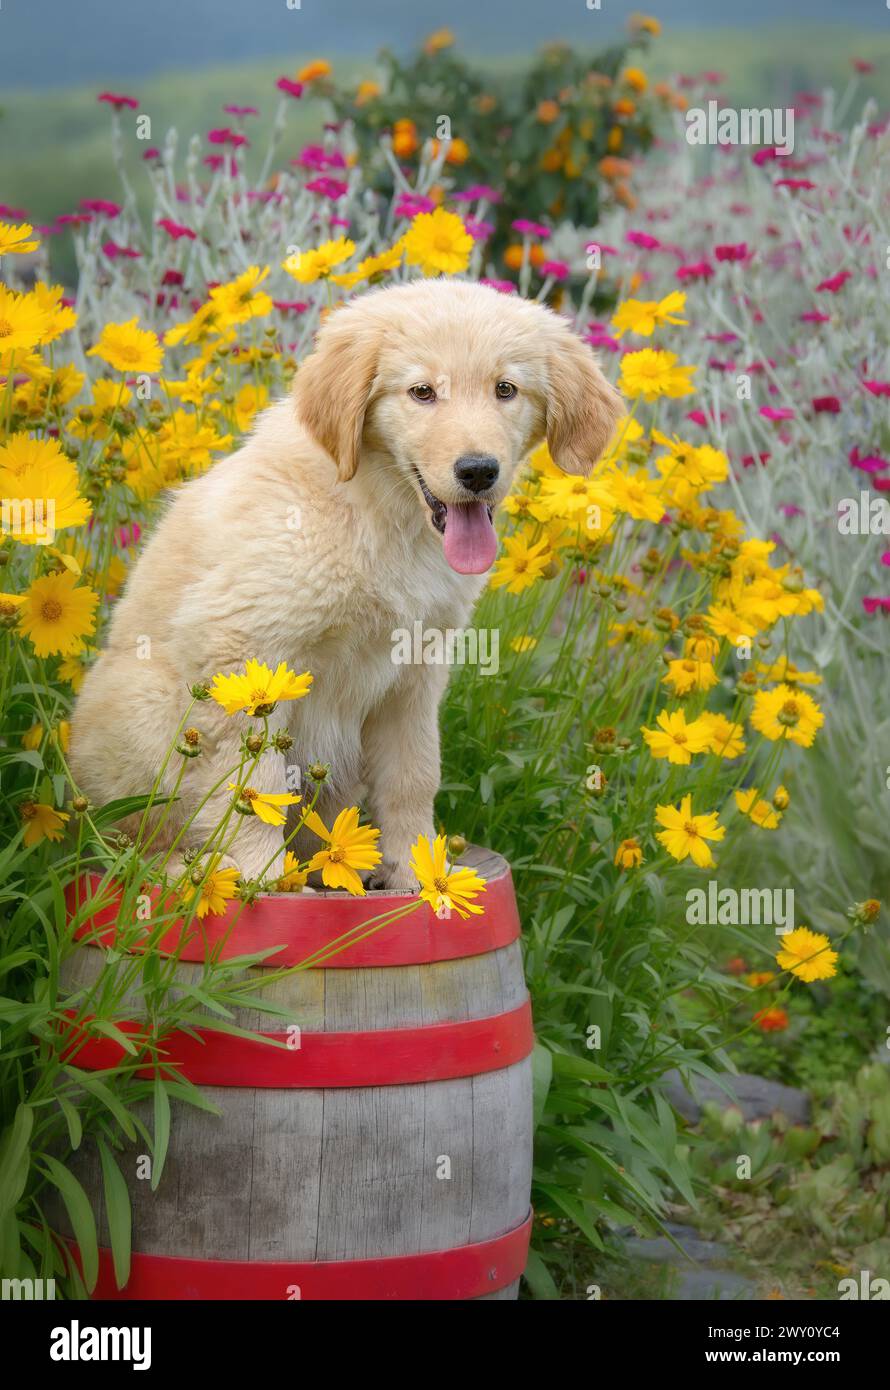 Il giovane cucciolo di cane Golden Retriever seduto su una vecchia botte di legno ammira i fiori colorati in un giardino d'estate Foto Stock